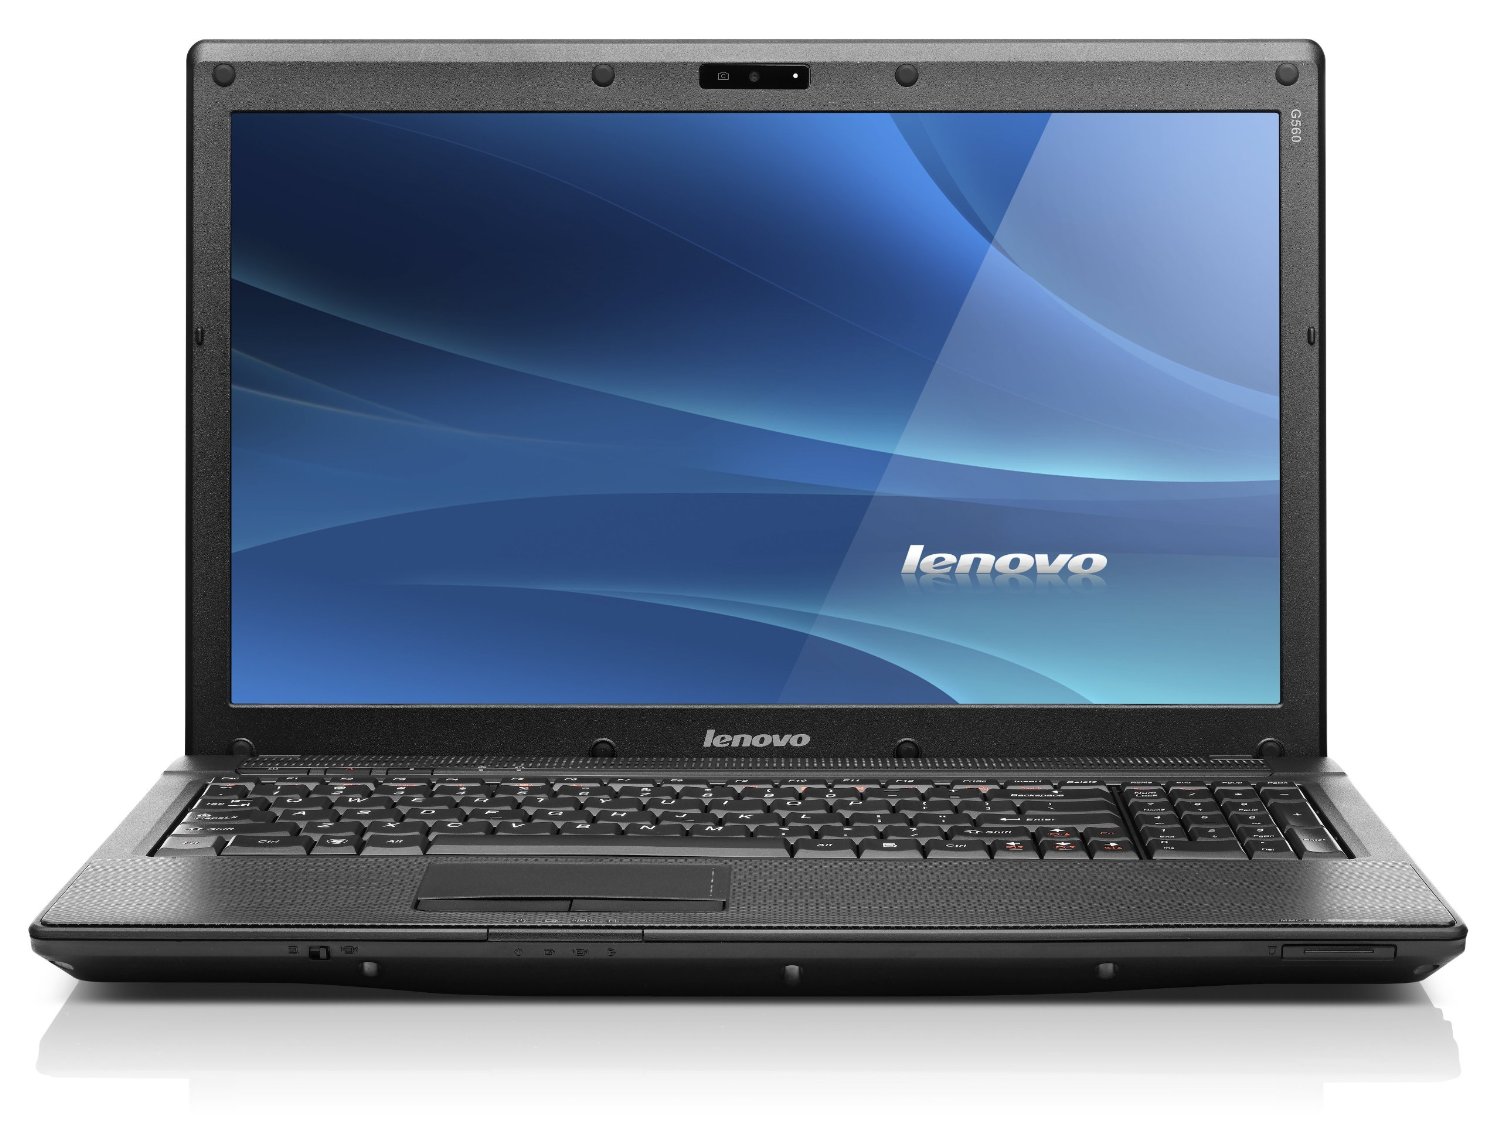 Ноутбук Lenovo G560 Купить Киев